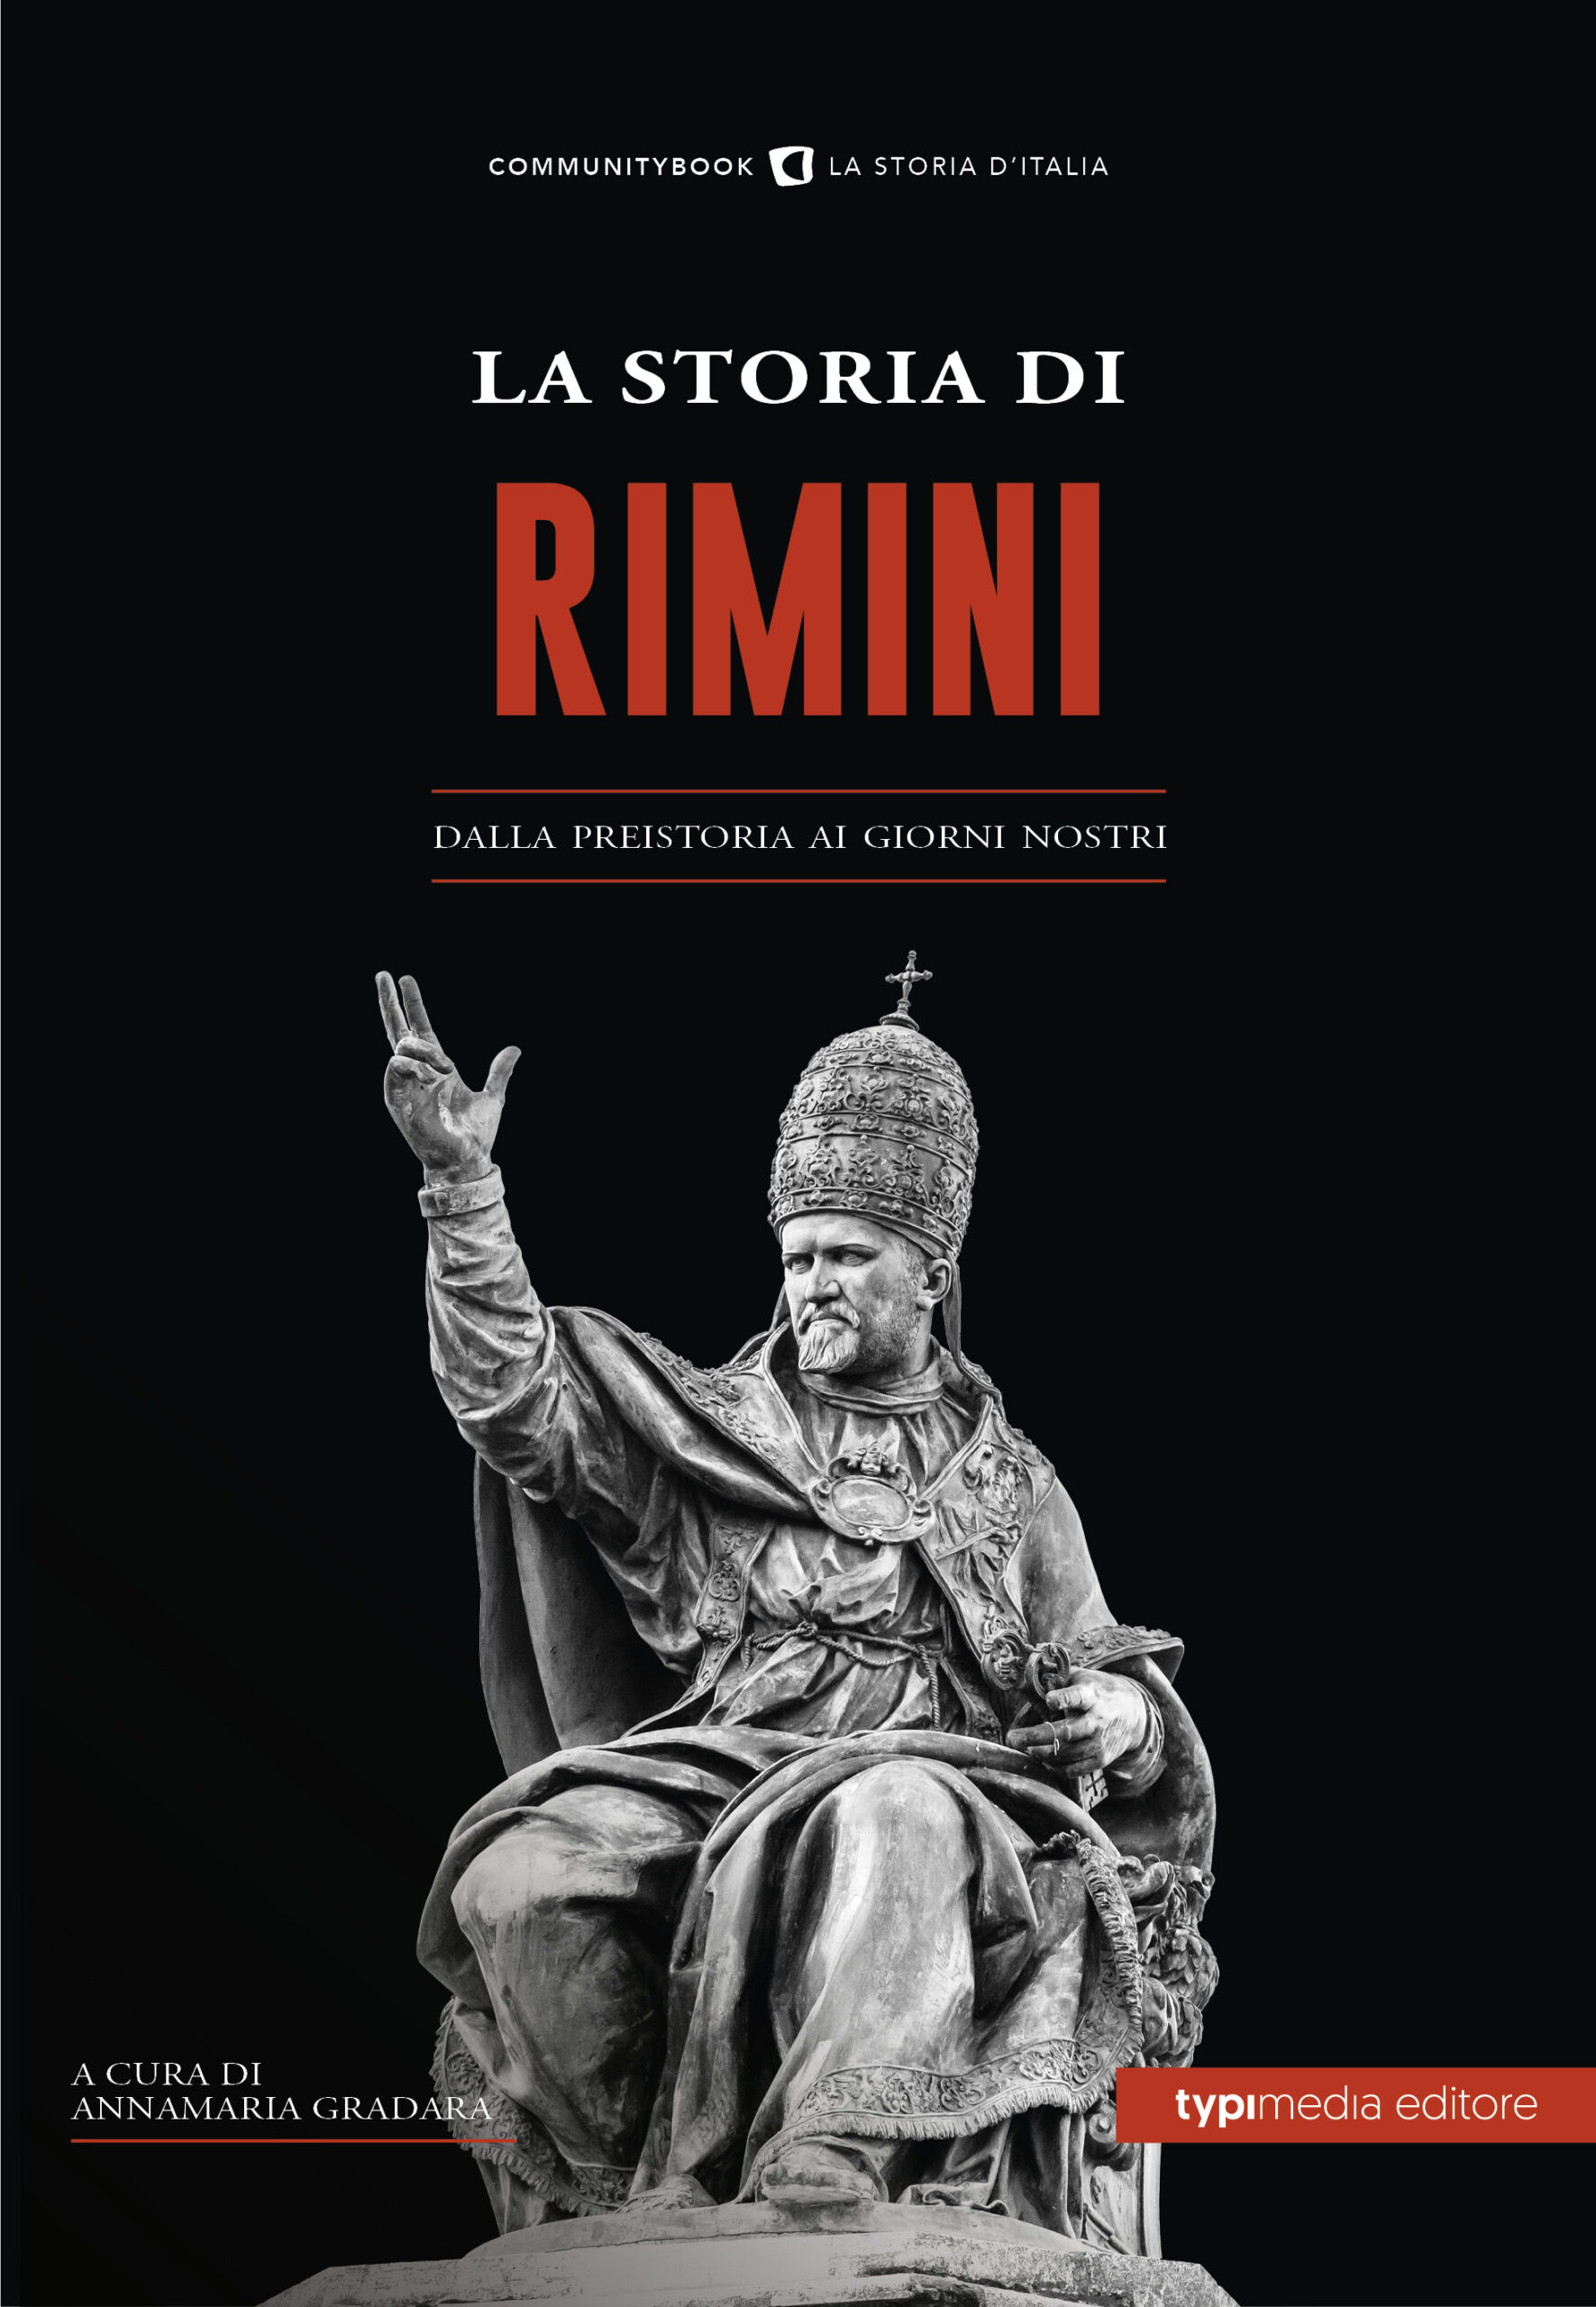 La Storia di Rimini - Typimedia EditoreTypimedia Editore